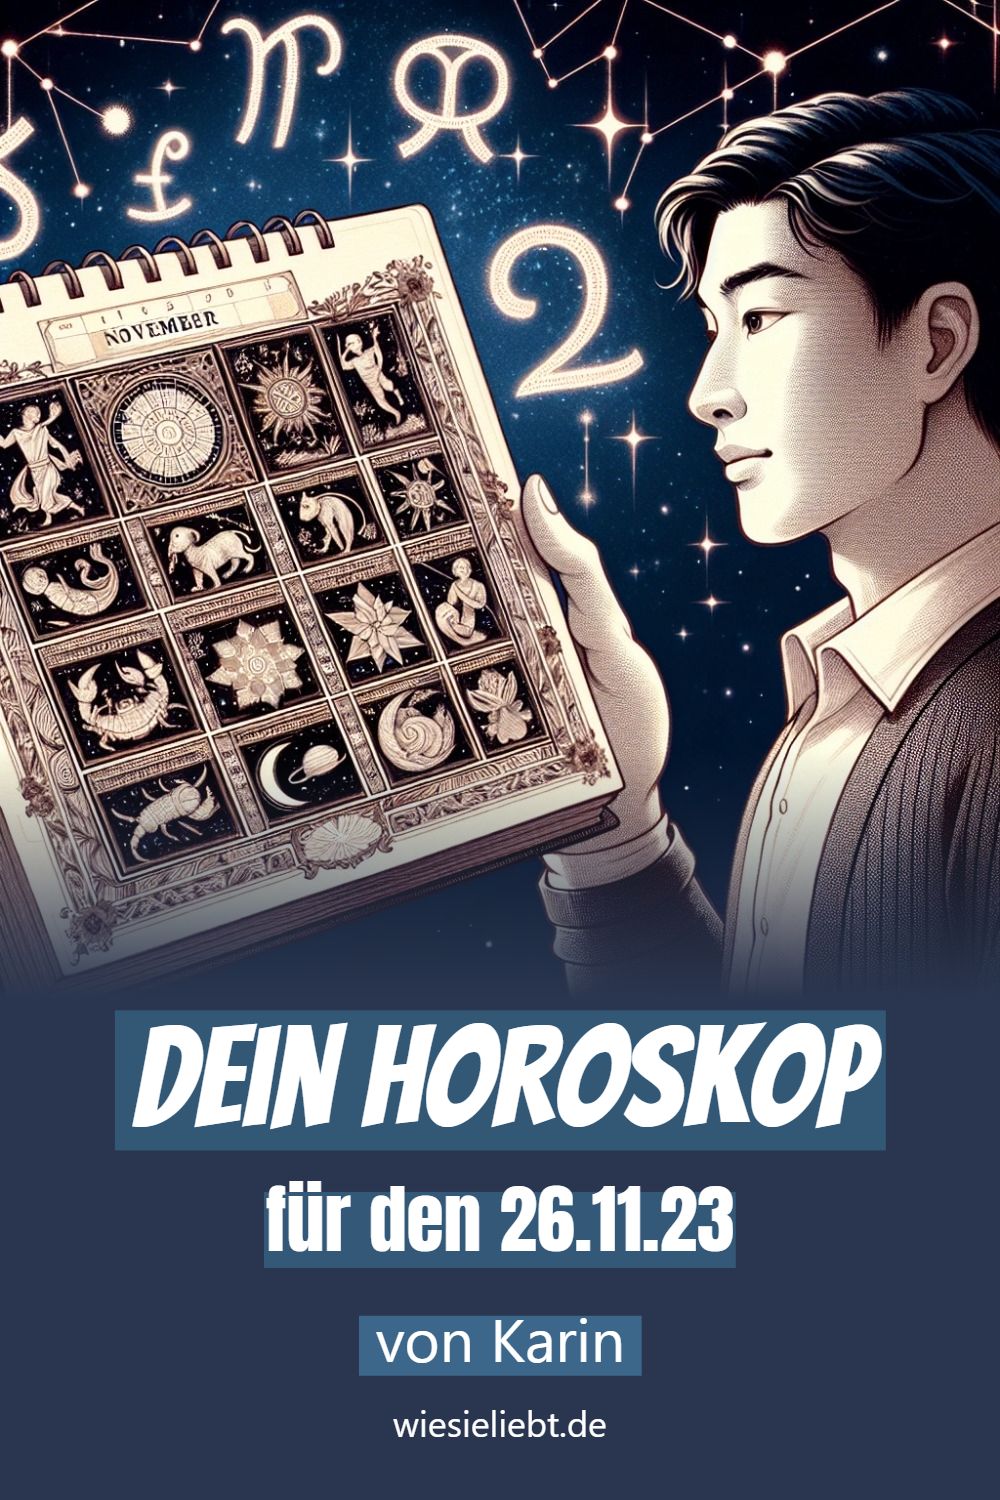 Dein Horoskop für den 26.11.23 von Karin